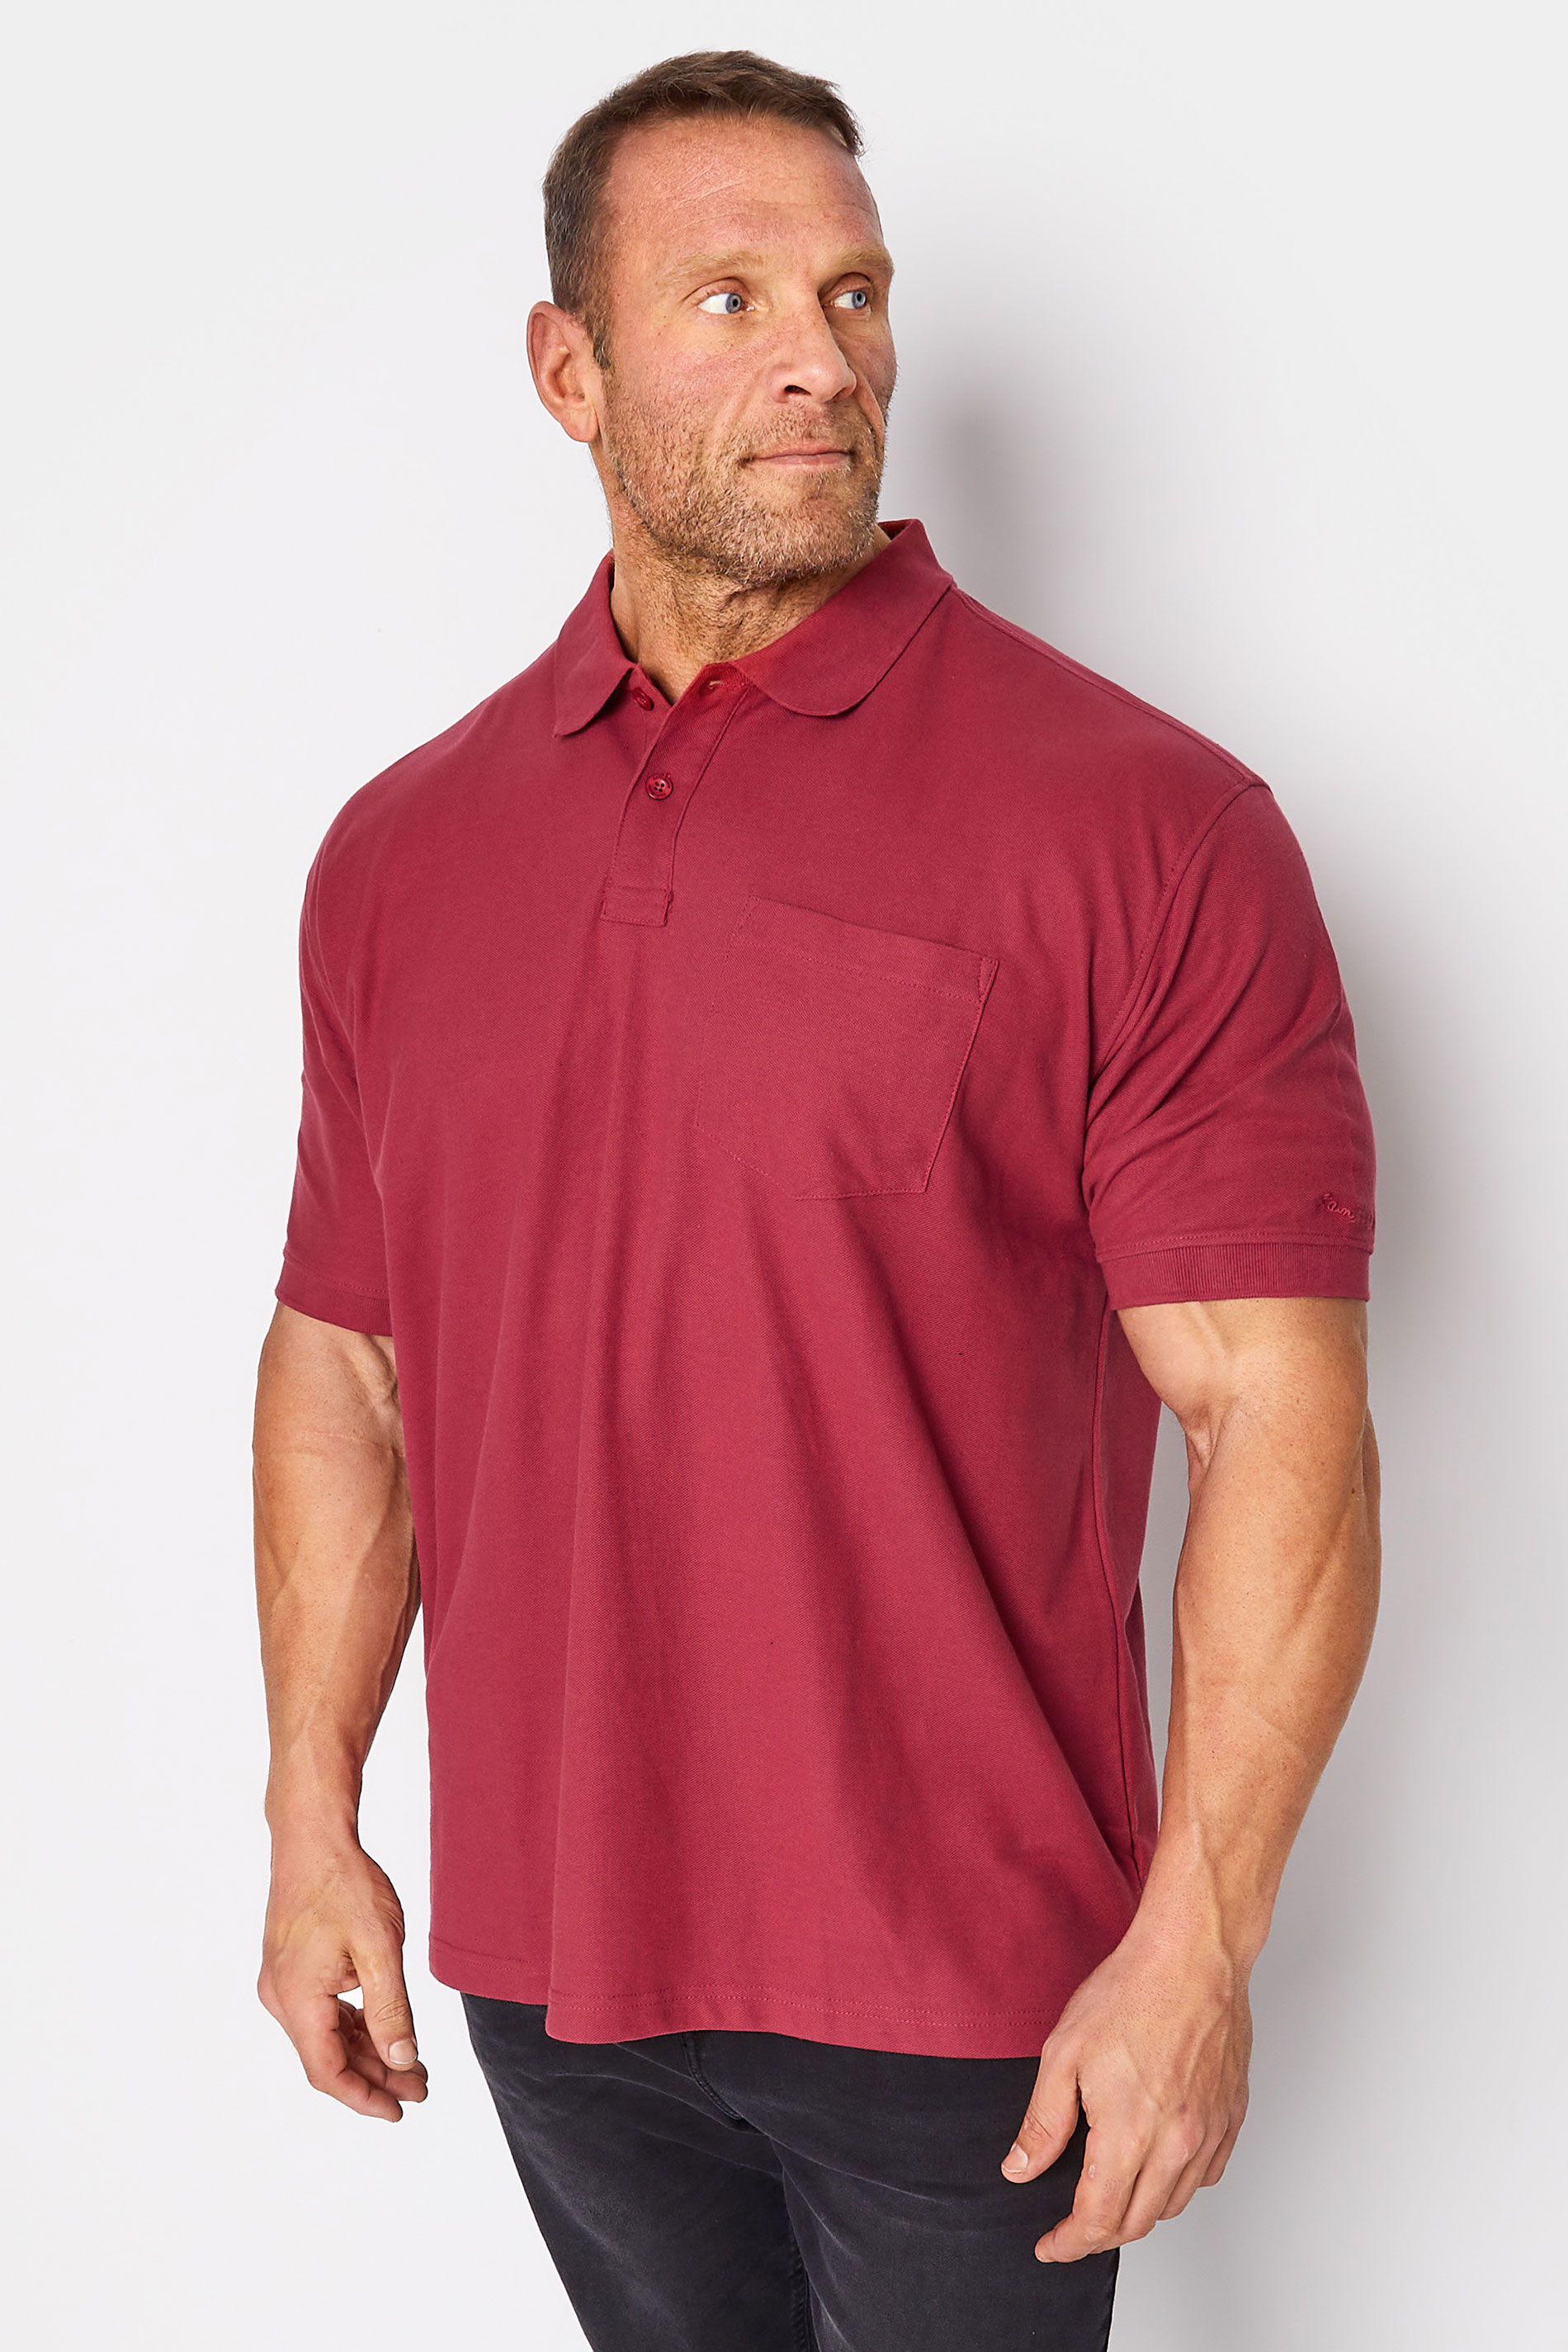 KAM Red Pocket Polo Shirt | BadRhino 1